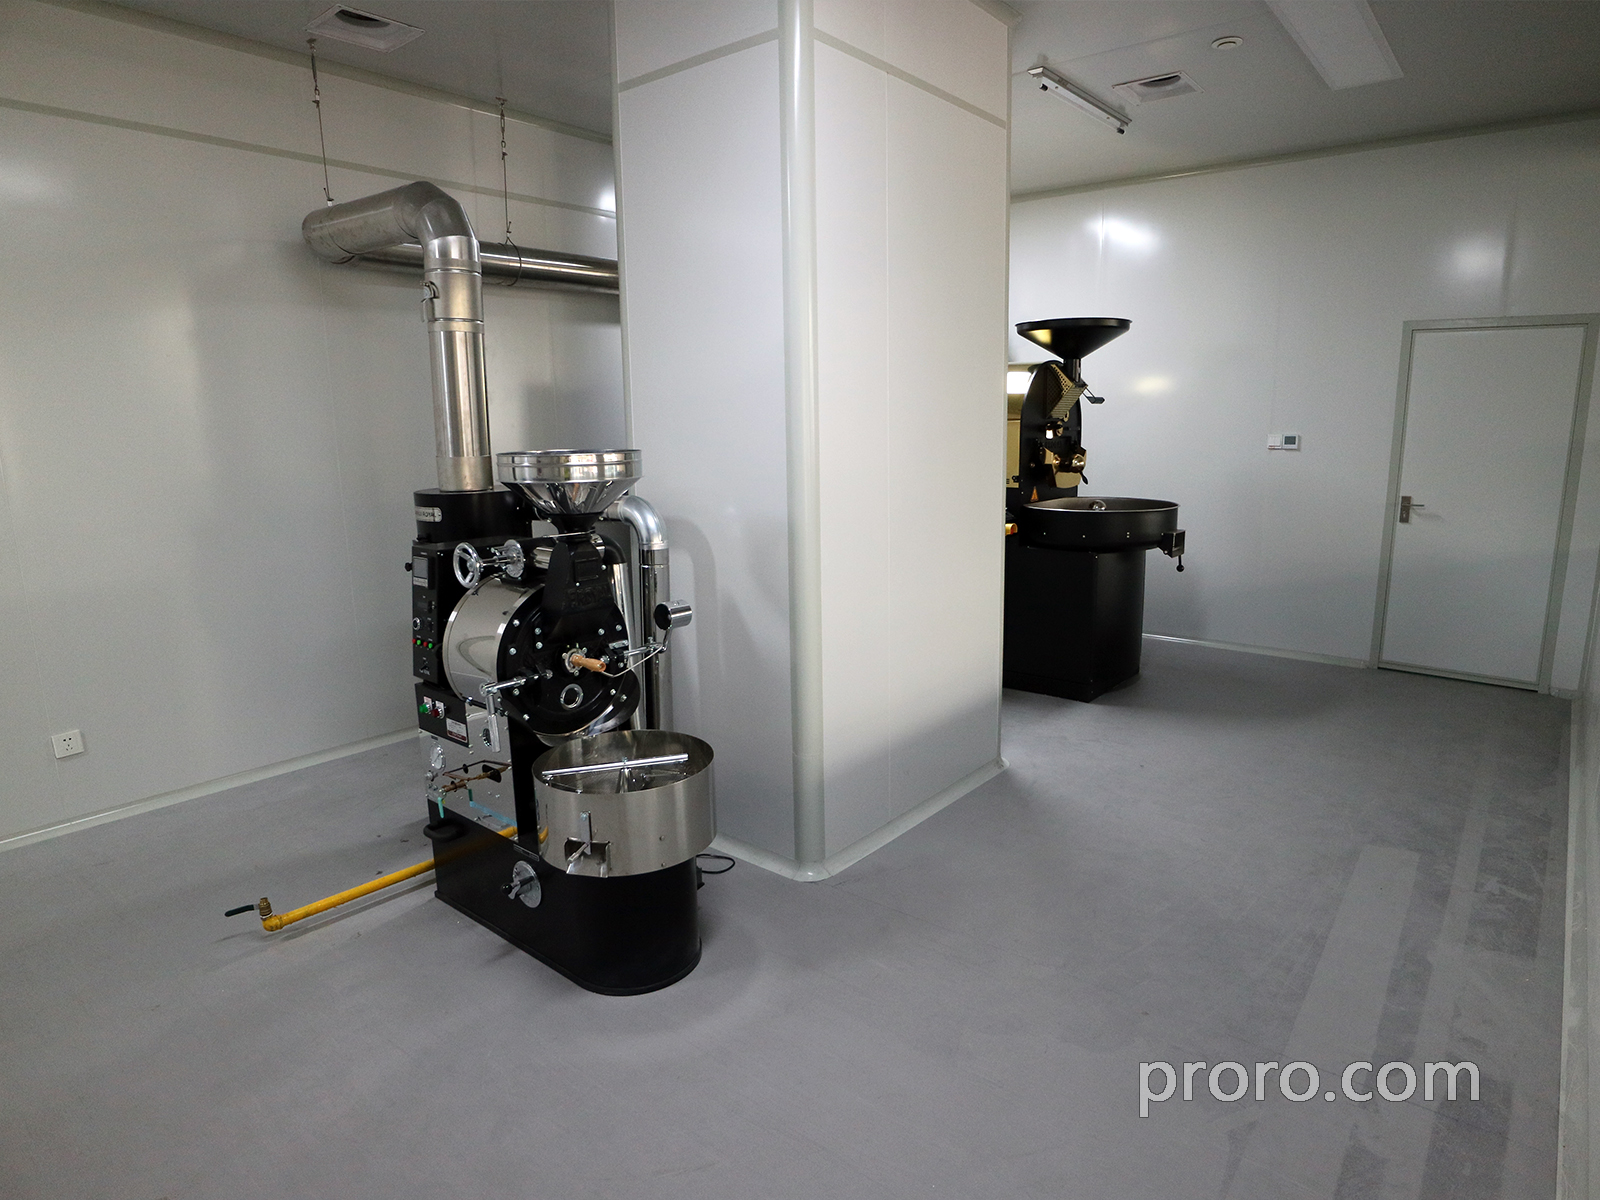  PROBAT / FUJIROYAL 富士皇家咖啡烘焙机 后燃机 安装案例 - 杭州诗瓦娜咖啡工厂店。